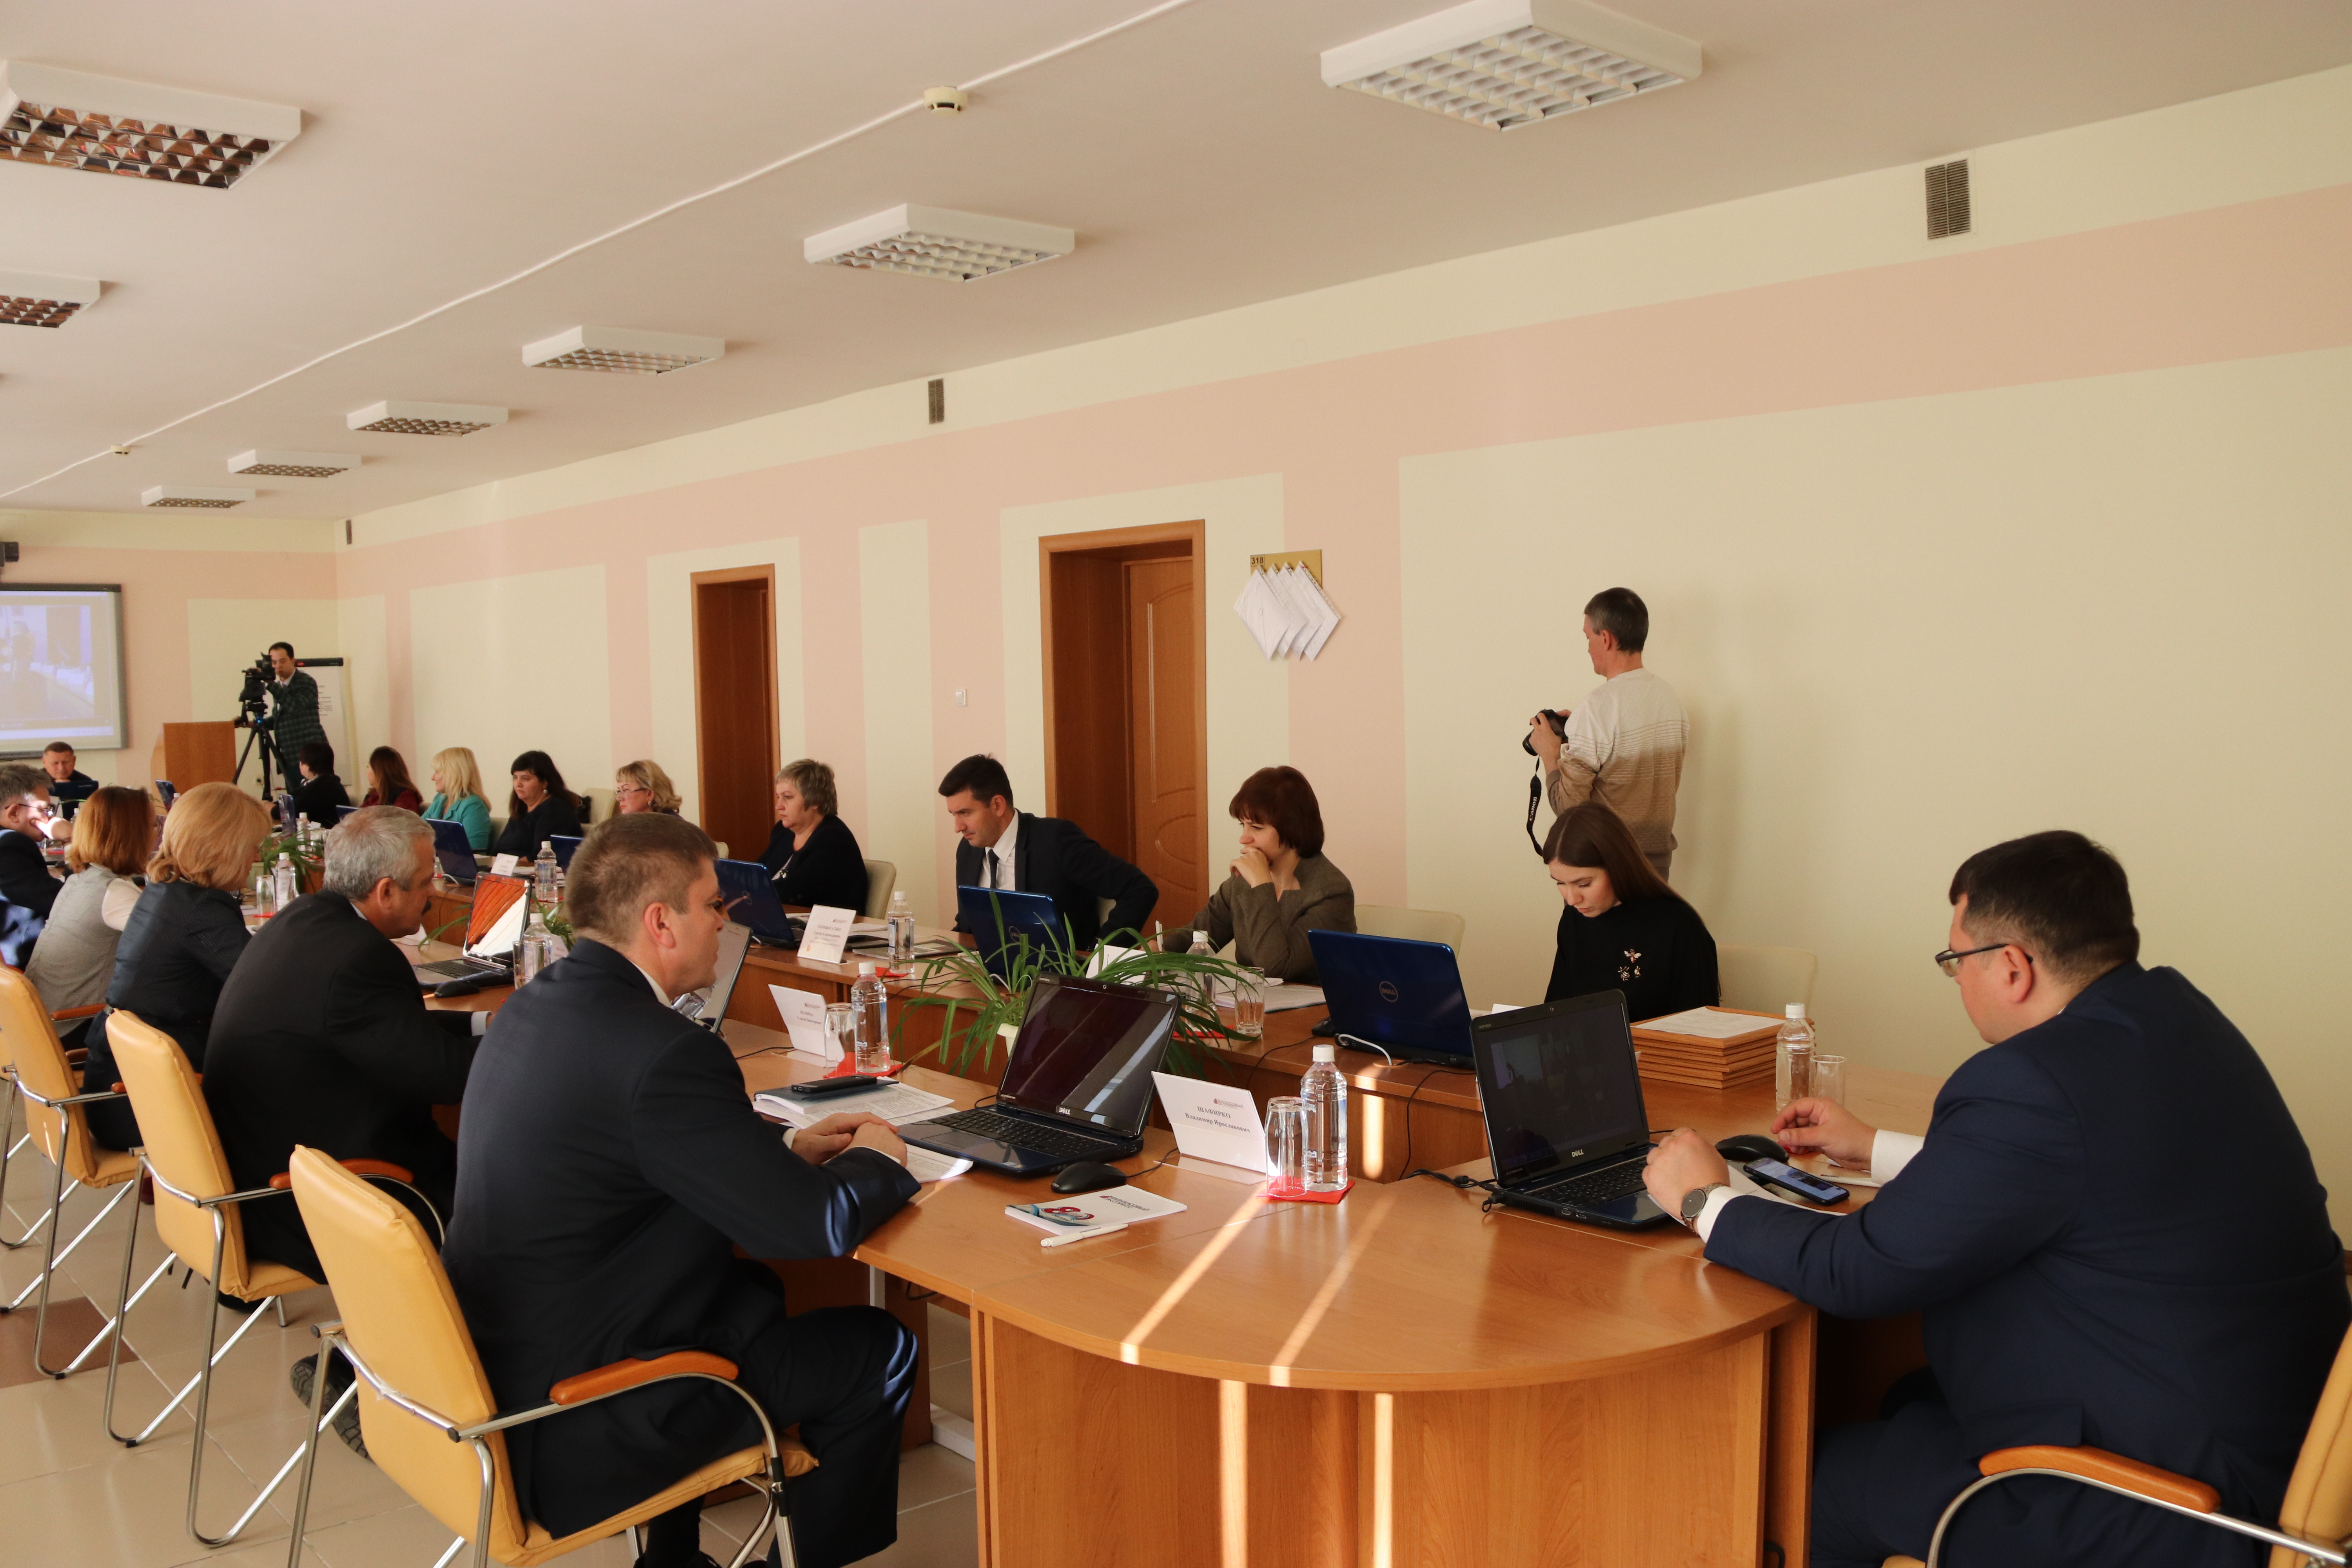 Круглый стол по вопросам повышения финансовой грамотности школьников и студентов пройдет в городе Белово 